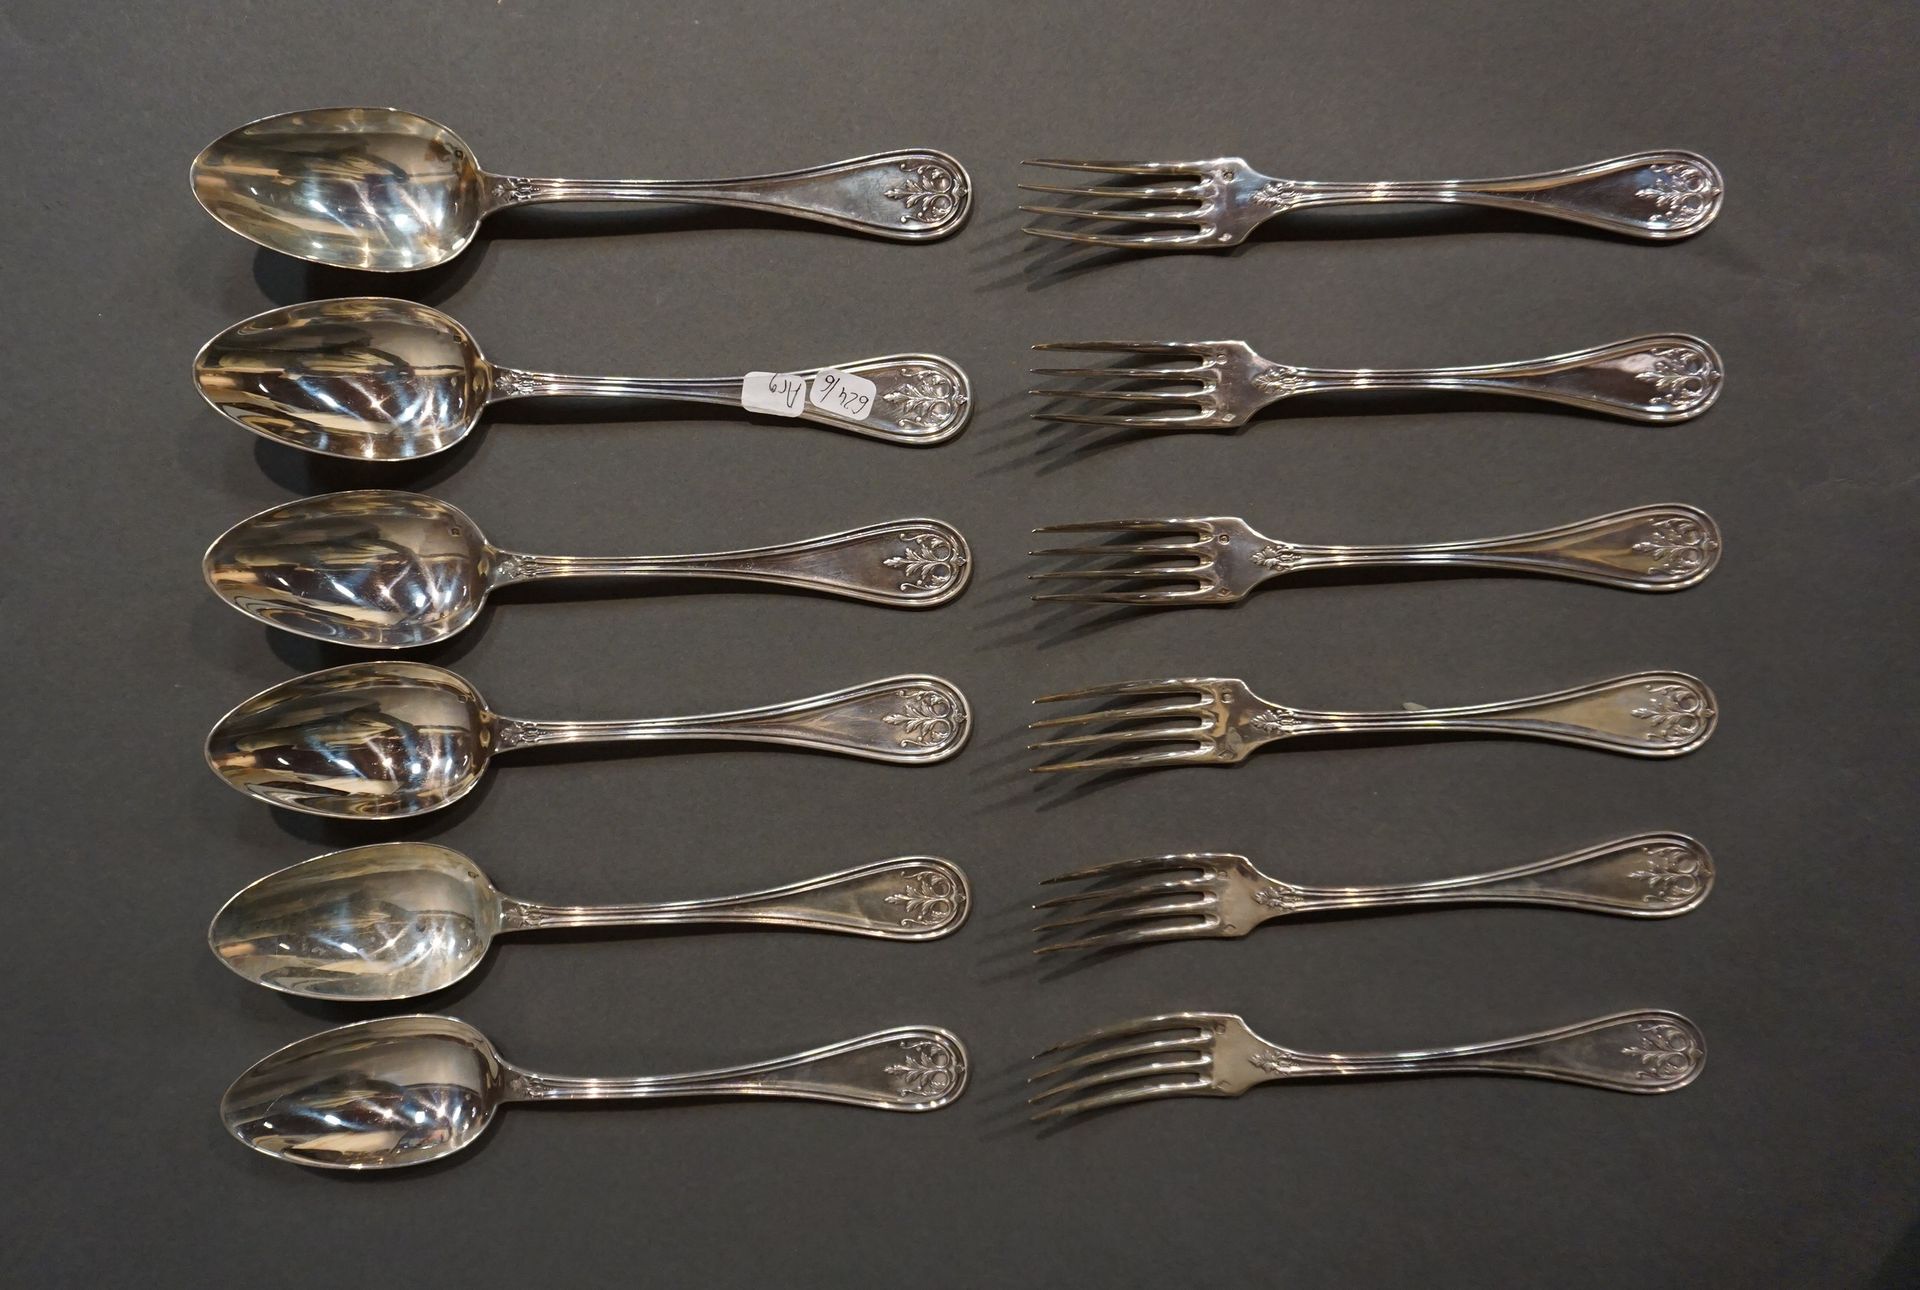 COUVERTS Seis cucharas grandes de plata y seis tenedores grandes de plata con de&hellip;